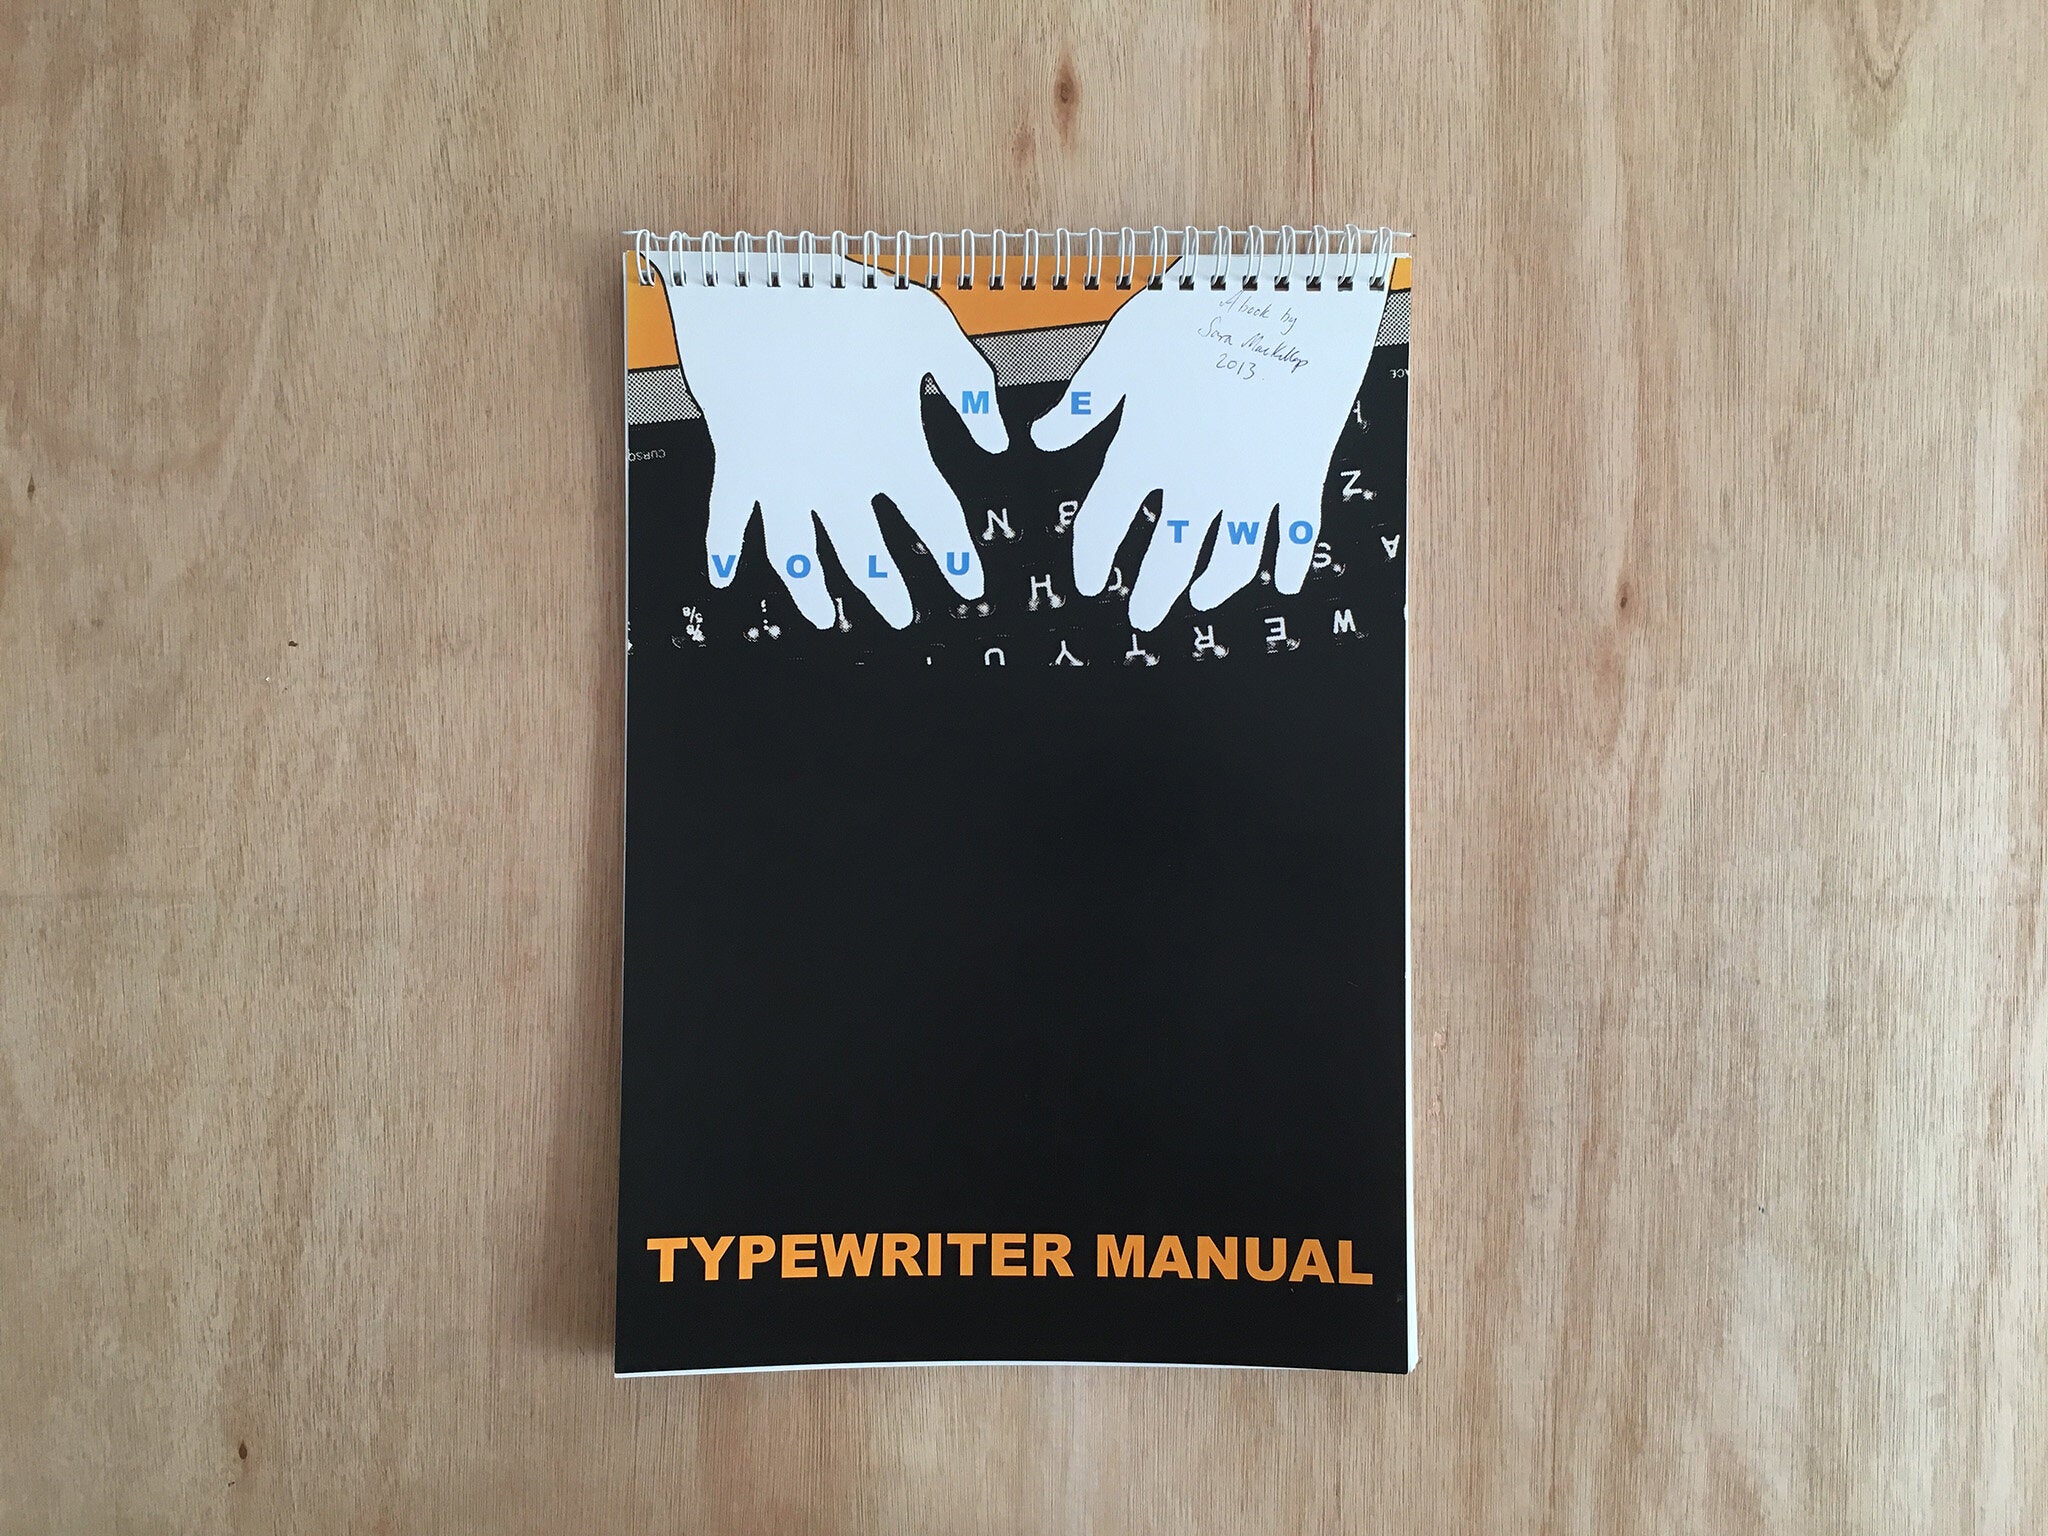 TYPEWRITER MANUAL VOL. 2 By Sara MacKillop